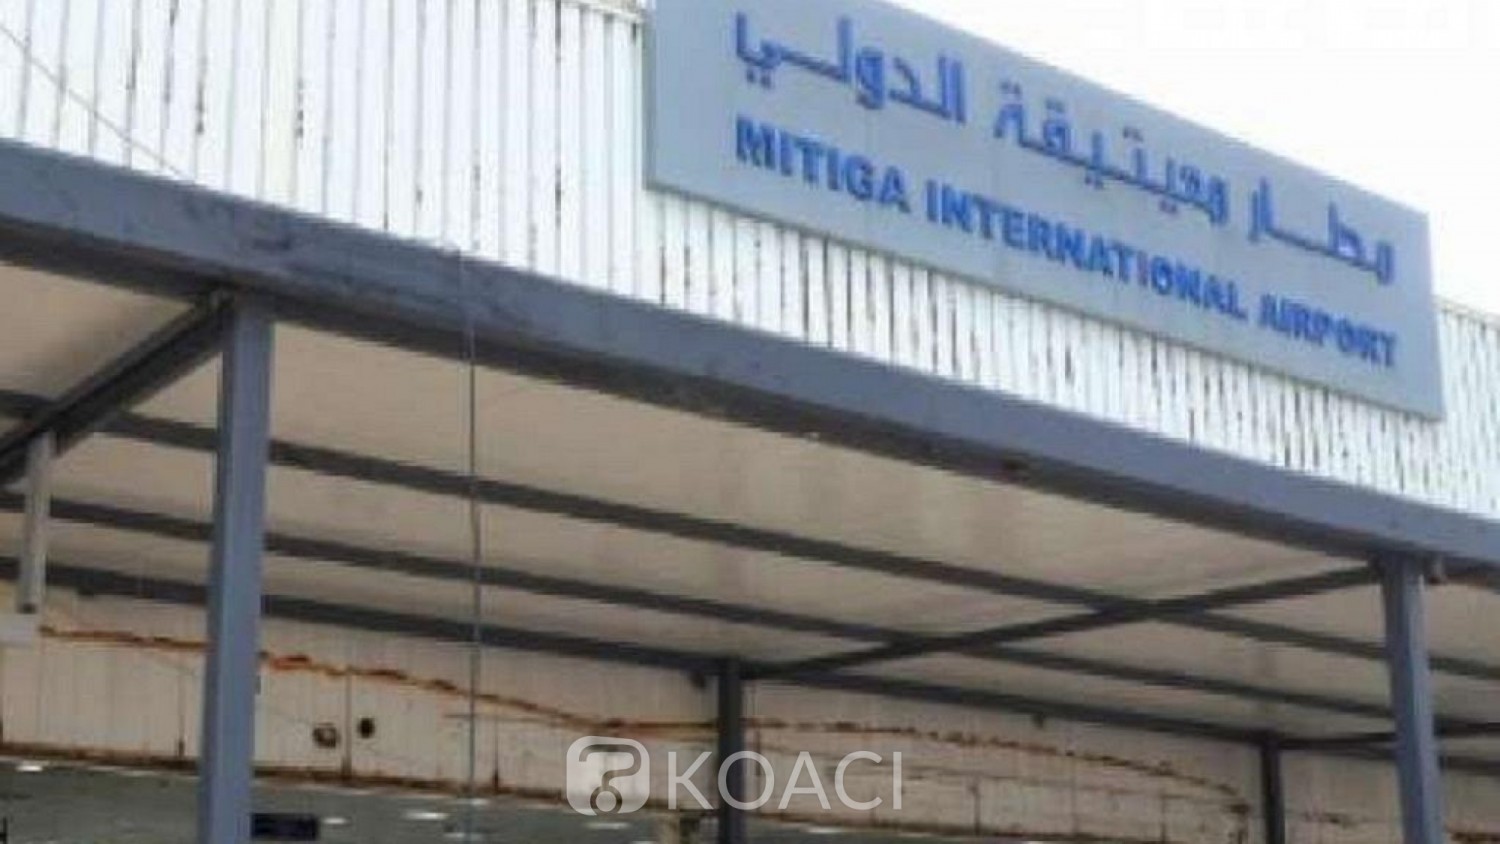 Libye: Arrêté à l'aéroport de Mitiga, un journaliste libyen porté disparu